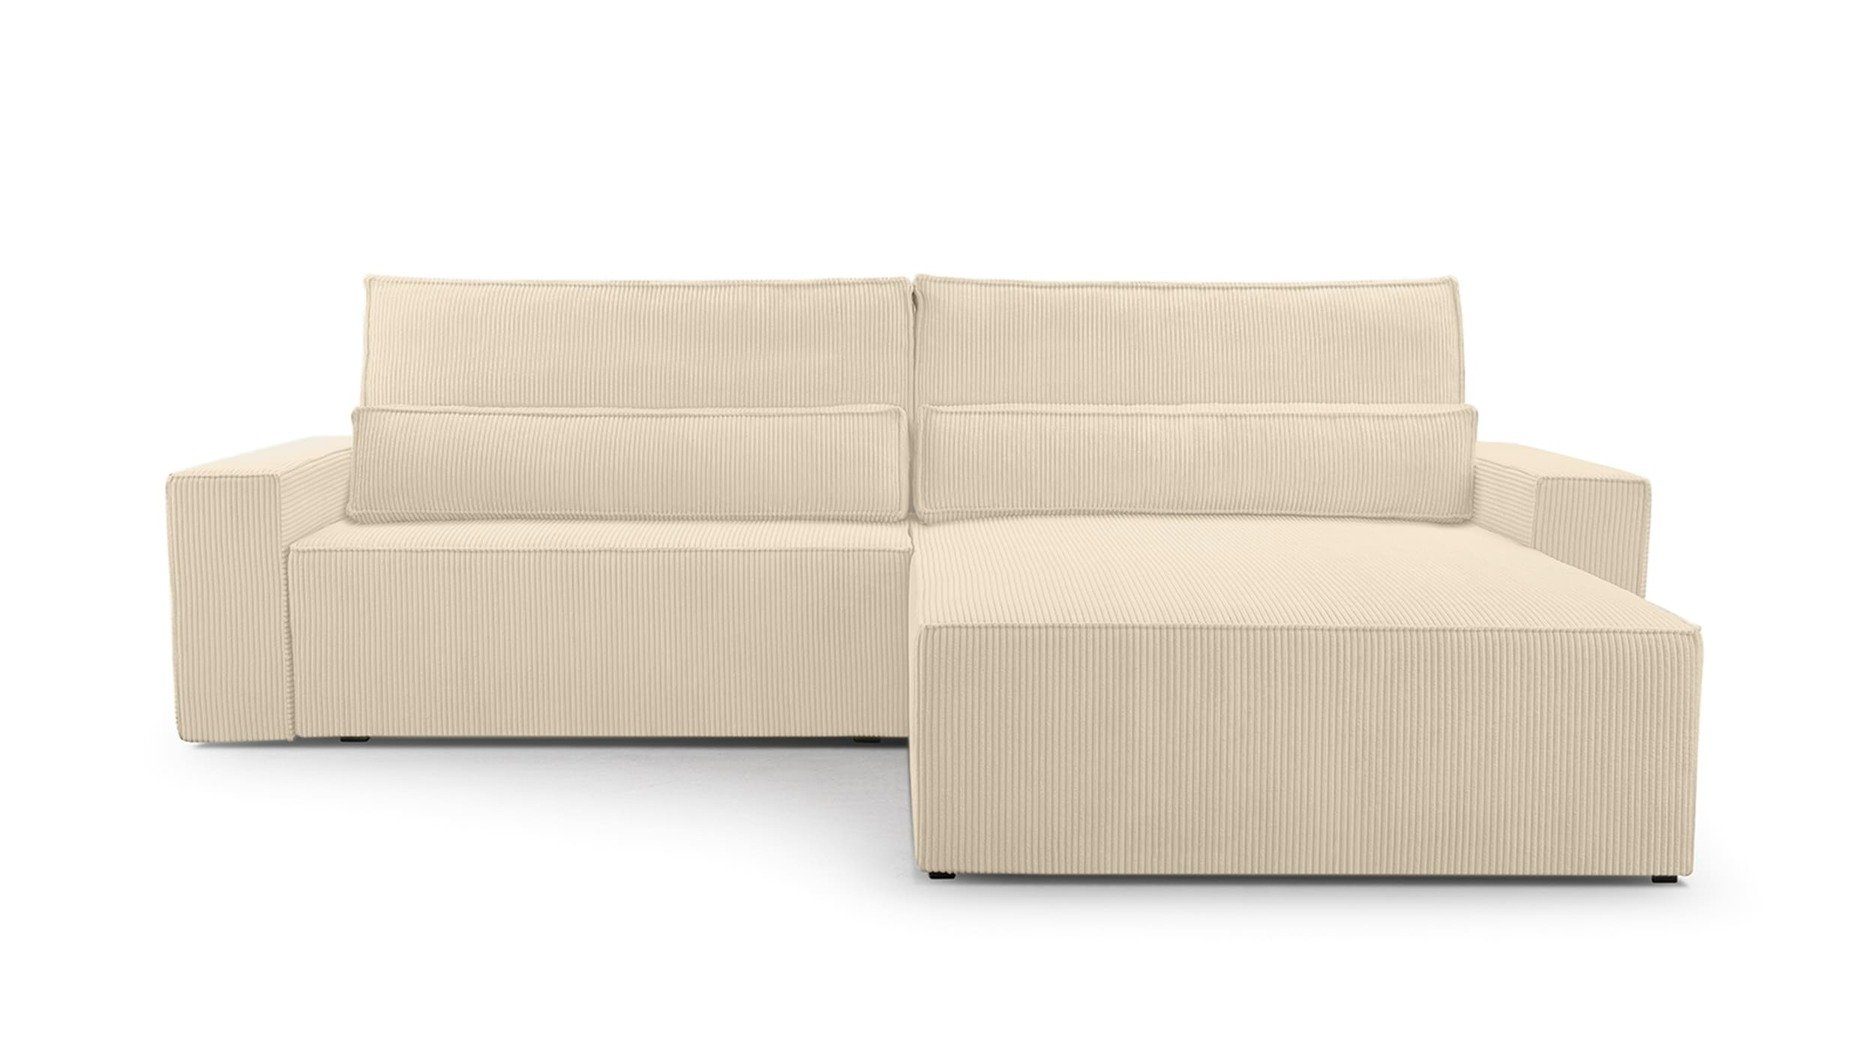 MOEBLO Ecksofa DENVER, mane beidseitig montierbar Couch Cord für Wohnzimmer Schlafsofa Sofagarnitur Sofa Eckcouch L-Form Cordstoff - 297x85x185cm, mit Schlaffunktion und Bettkasten Beige (Poso 105)